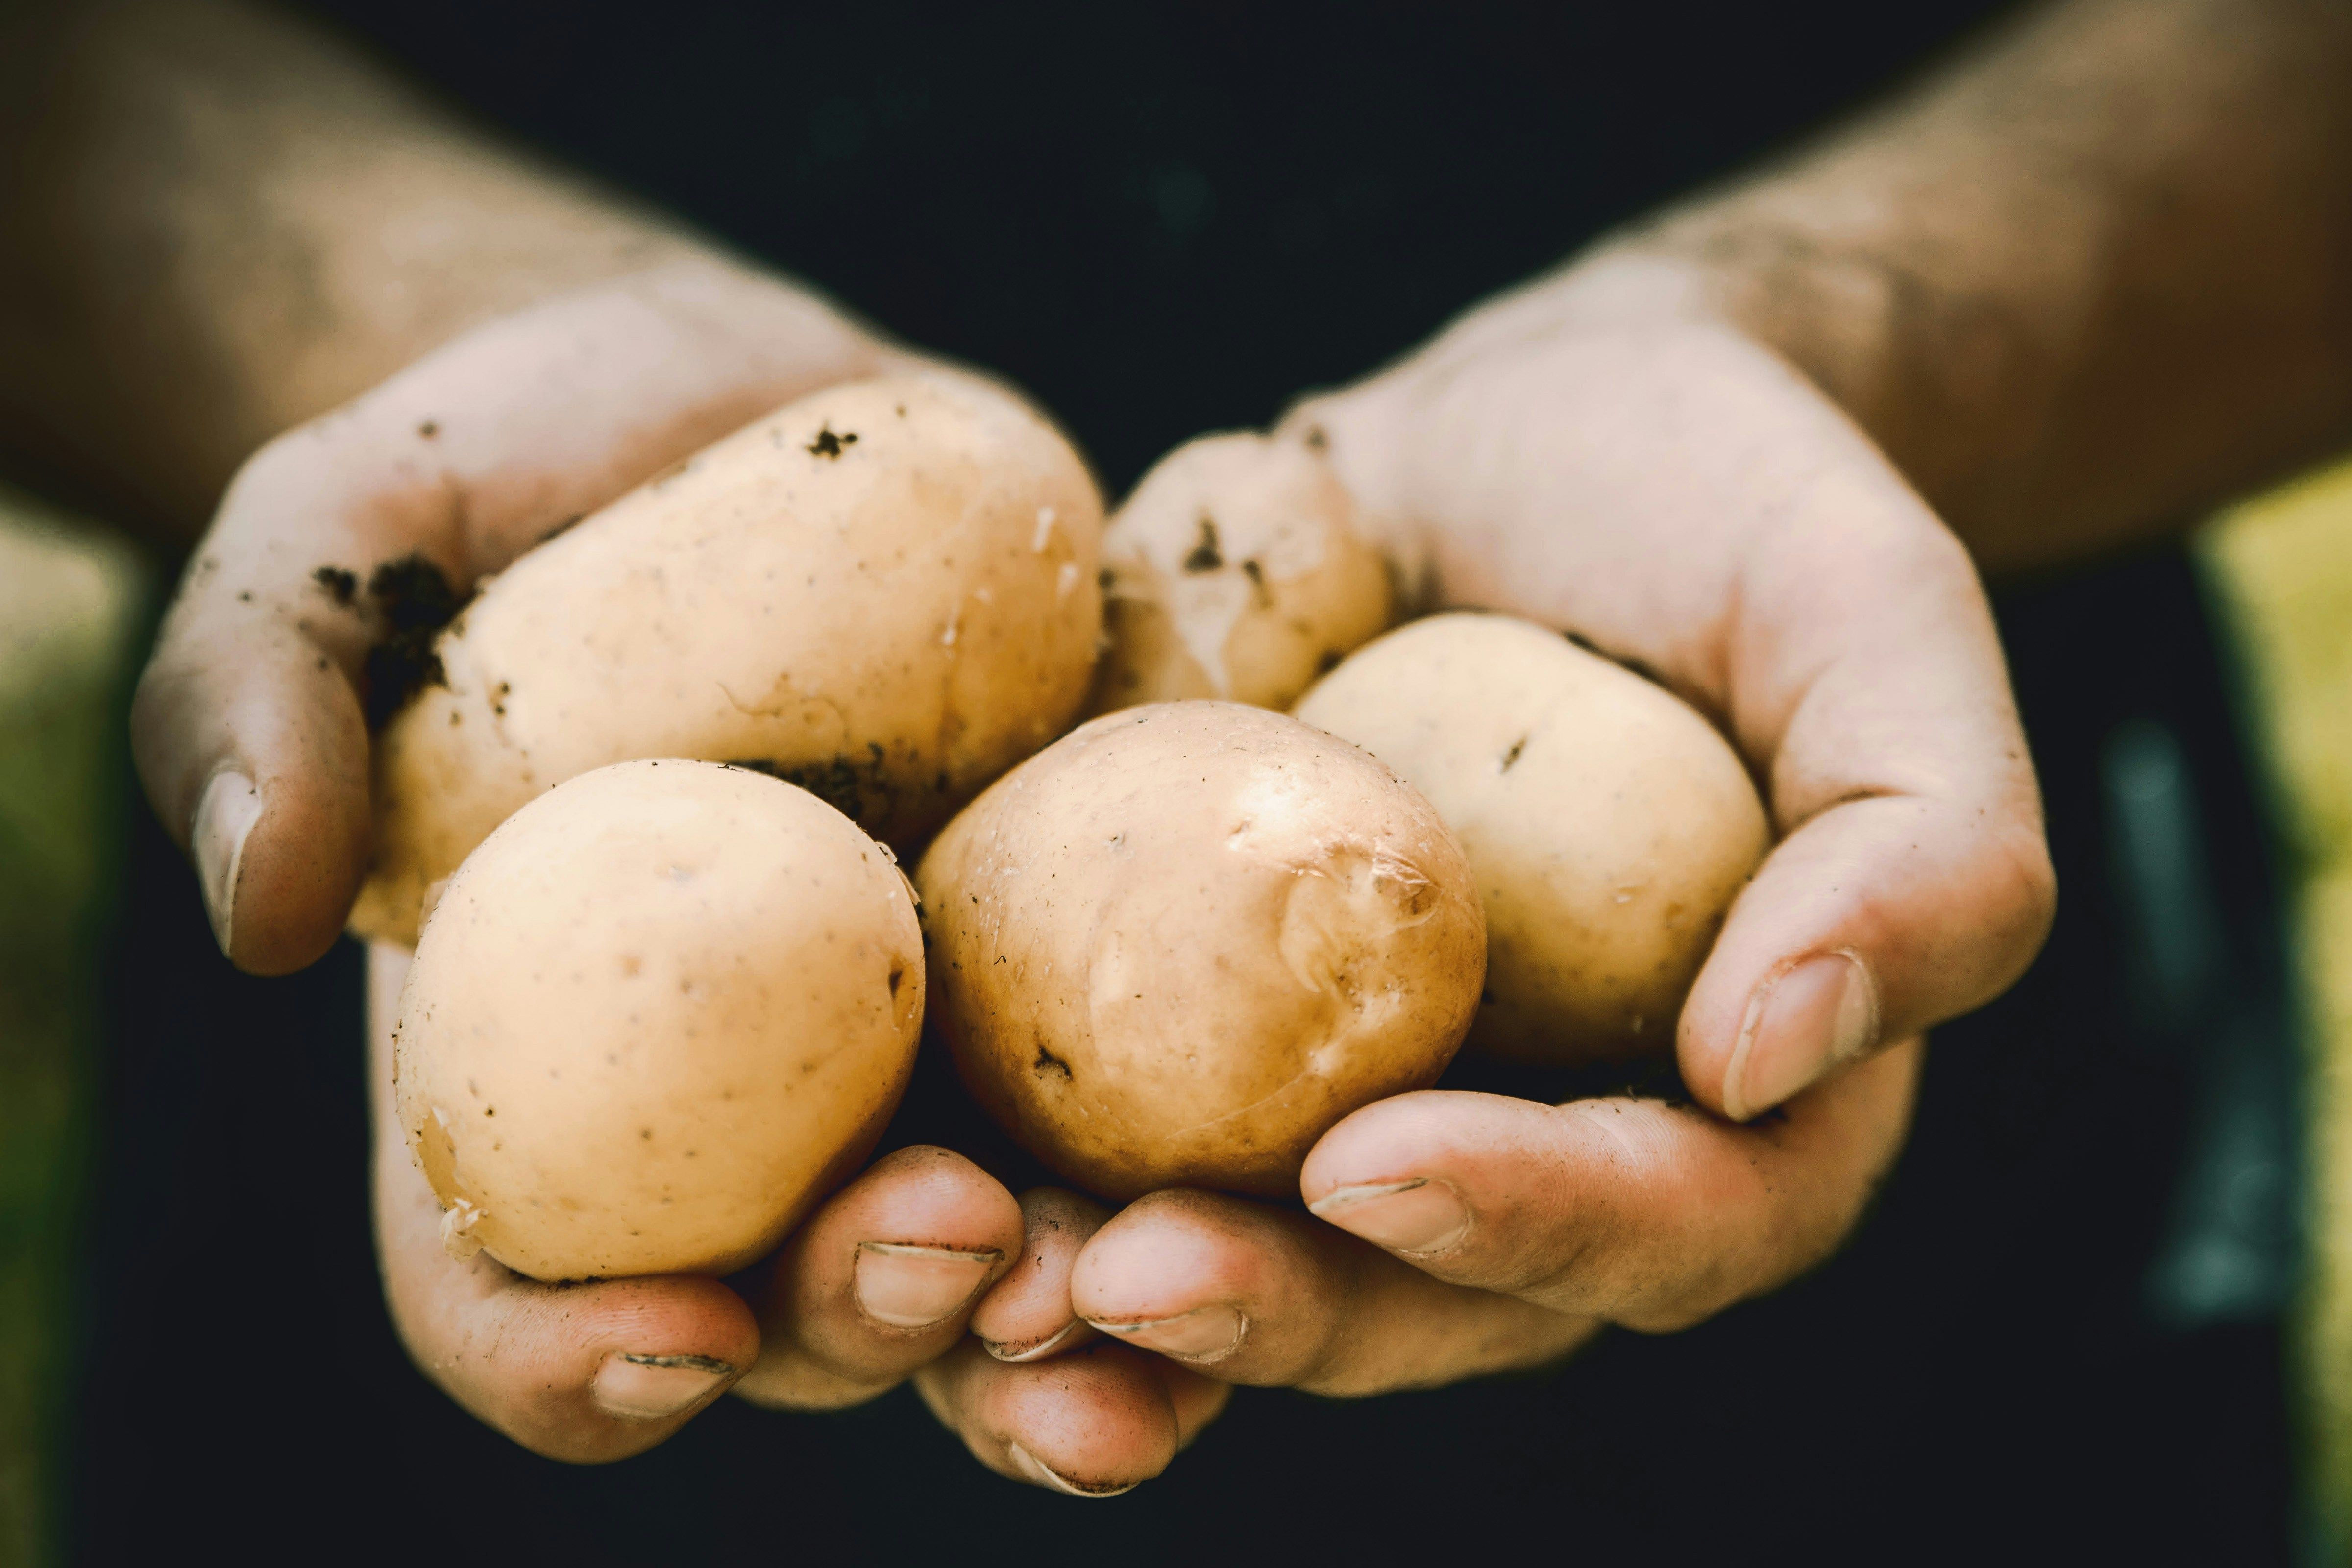 Цена картофеля - сколько стоит килограмм на рынке - огурец дешевеет